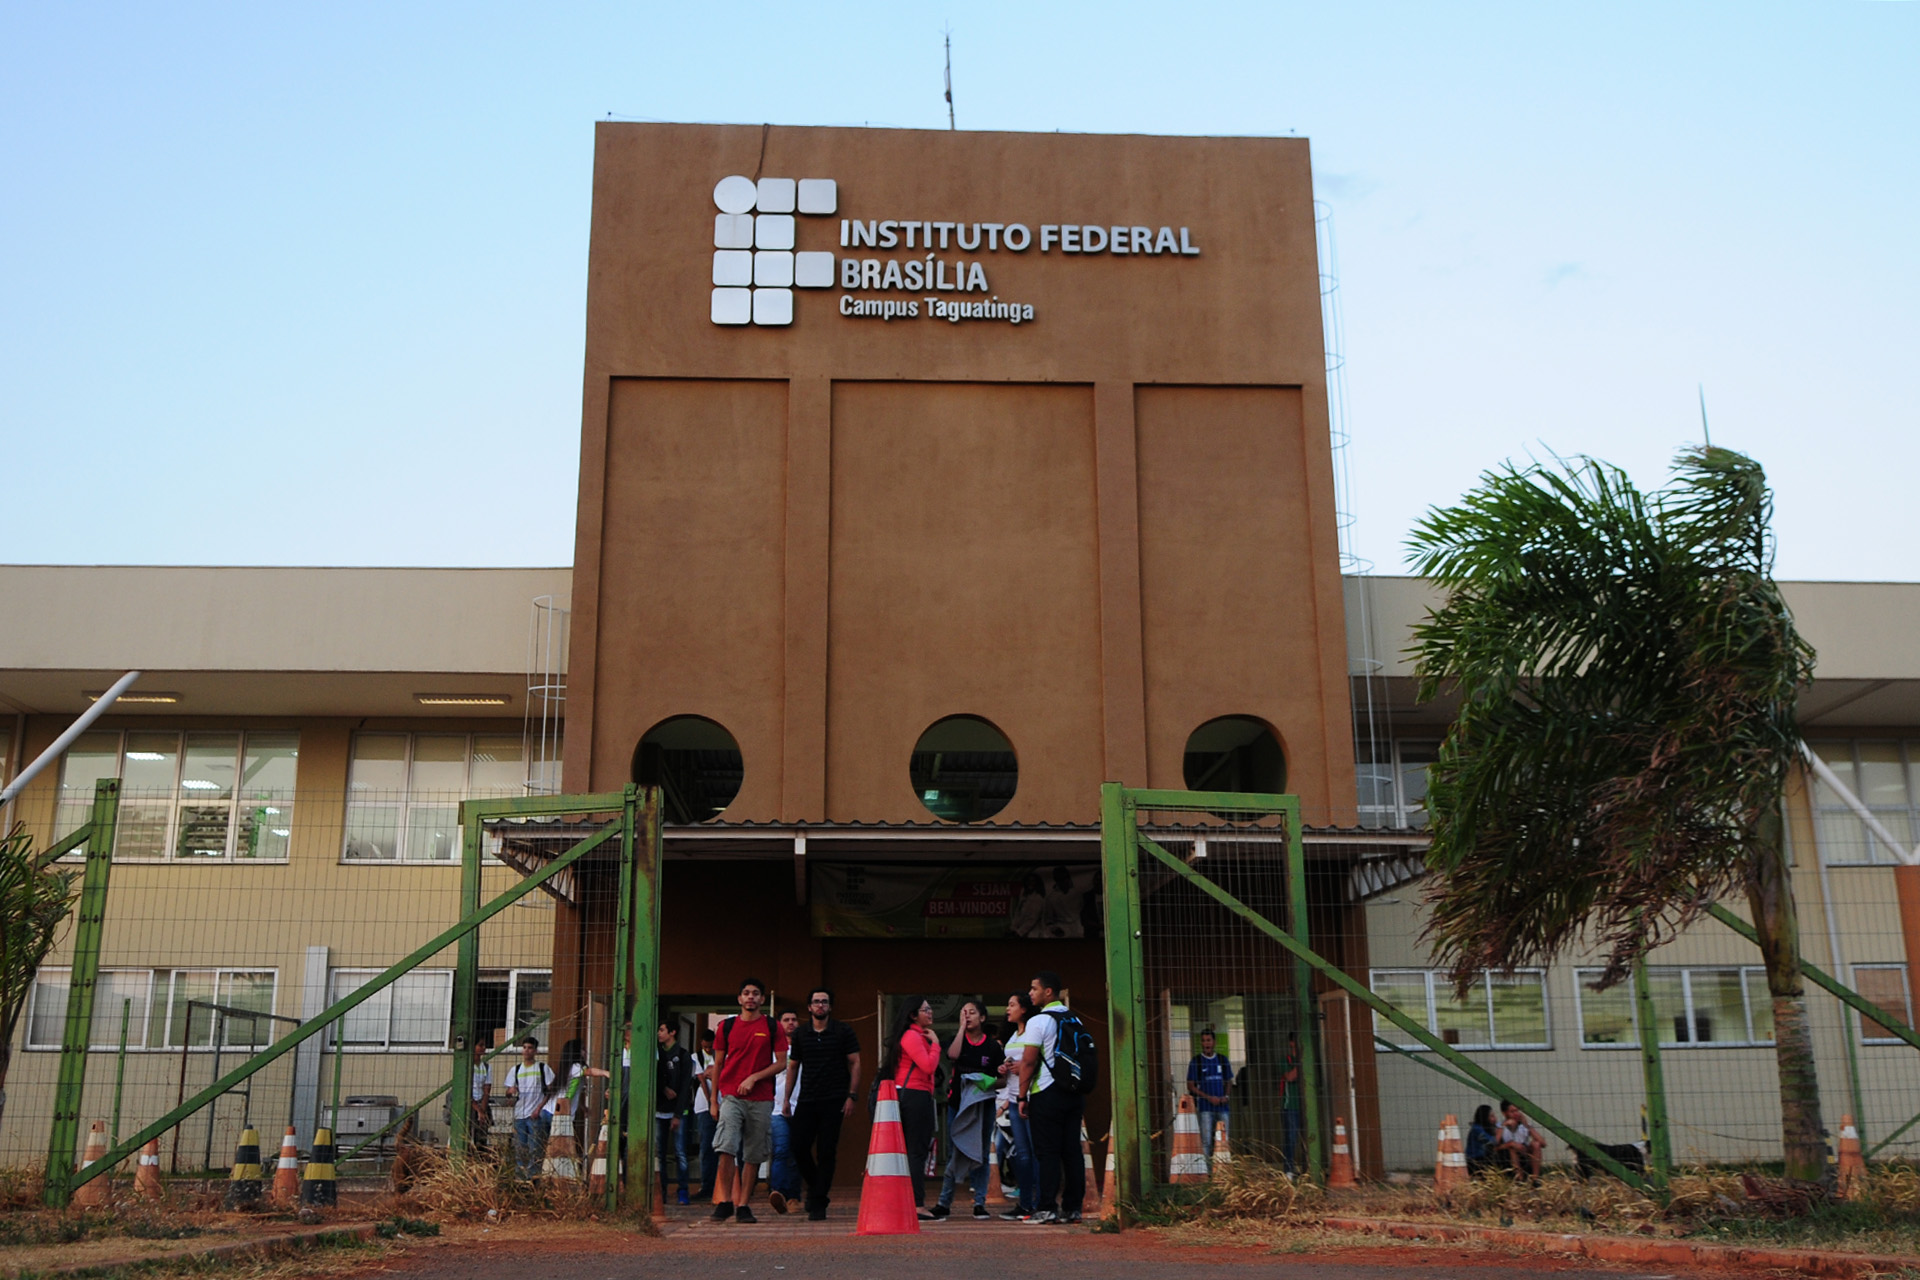 Mais de 2 mil vagas para cursos técnicos no Instituto Federal de Brasília (IFB) estão abertas. Os interessados em estudar em um dos dez campi no 1º semestre de 2019 têm até 30 de novembro para participar do processo seletivo.